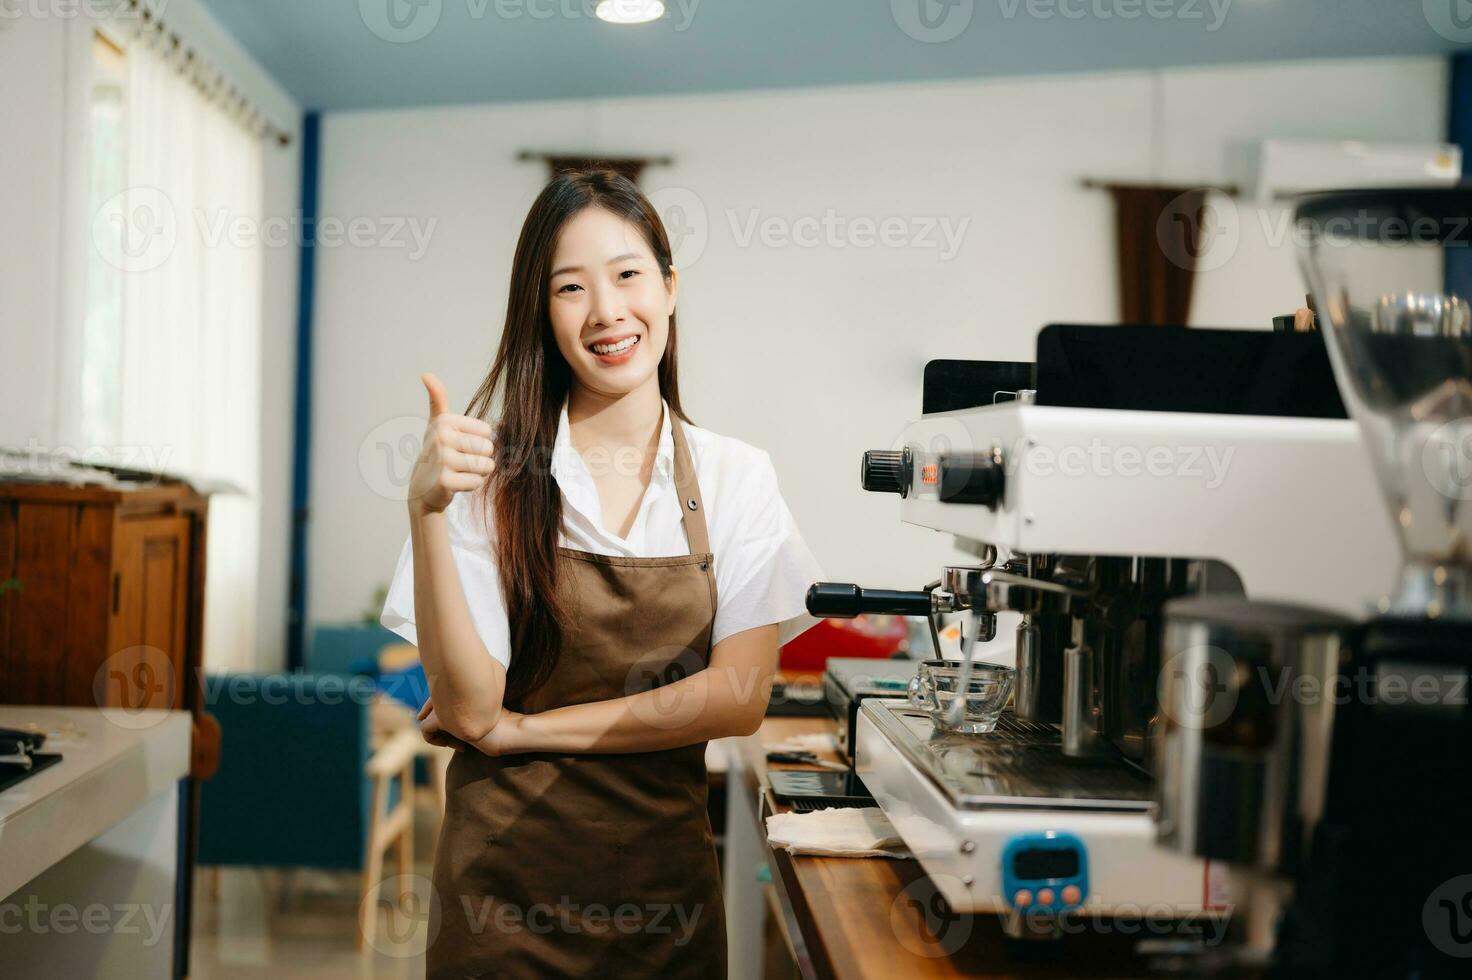 opstarten geslaagd klein bedrijf eigenaar mkb vrouw staan met tablet in cafe. vrouw barista cafe baasje. foto